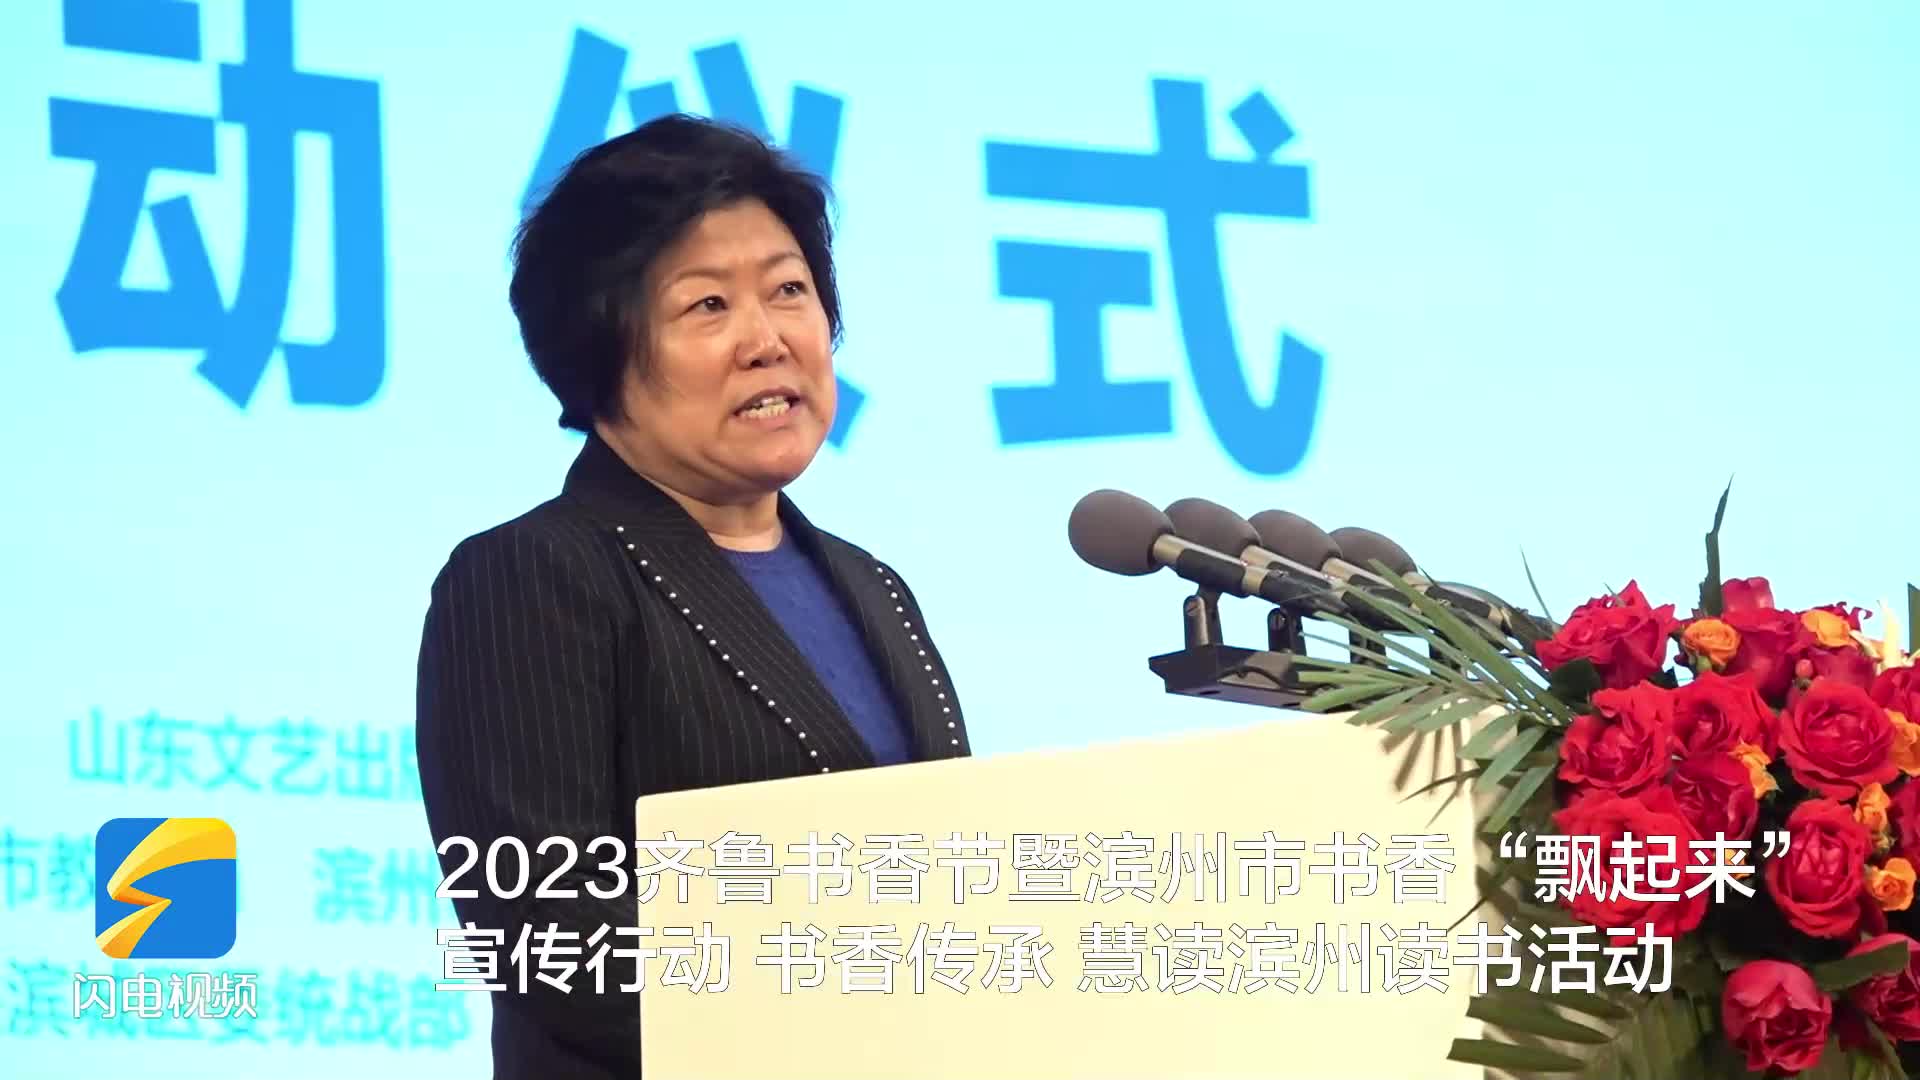 2023齐鲁书香节暨滨州市书香“飘起来”宣传行动启动仪式隆重举办